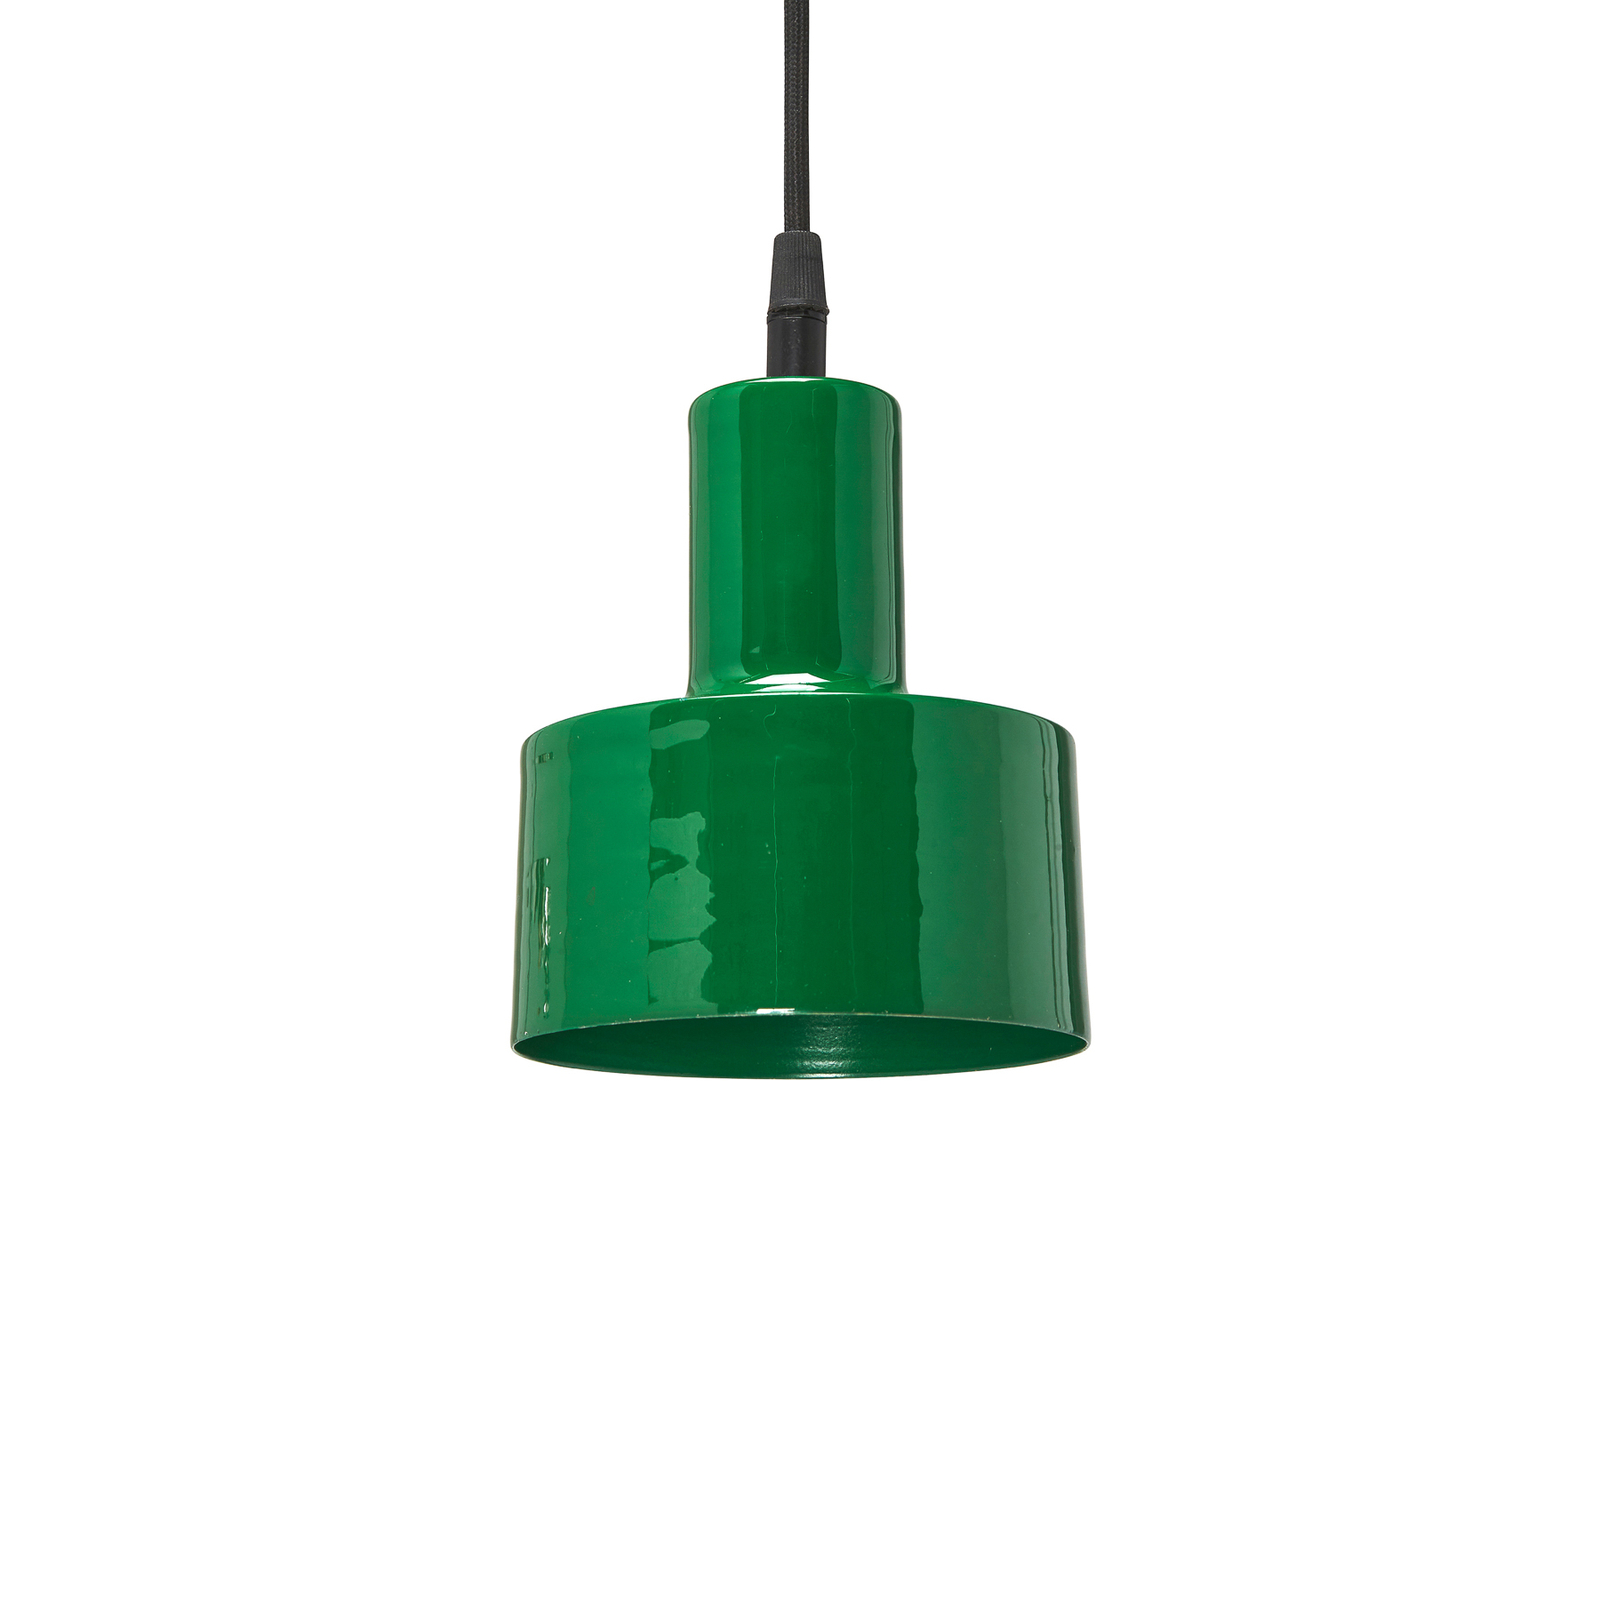 PR Home Solo Small hanglamp Ø 13 cm groen